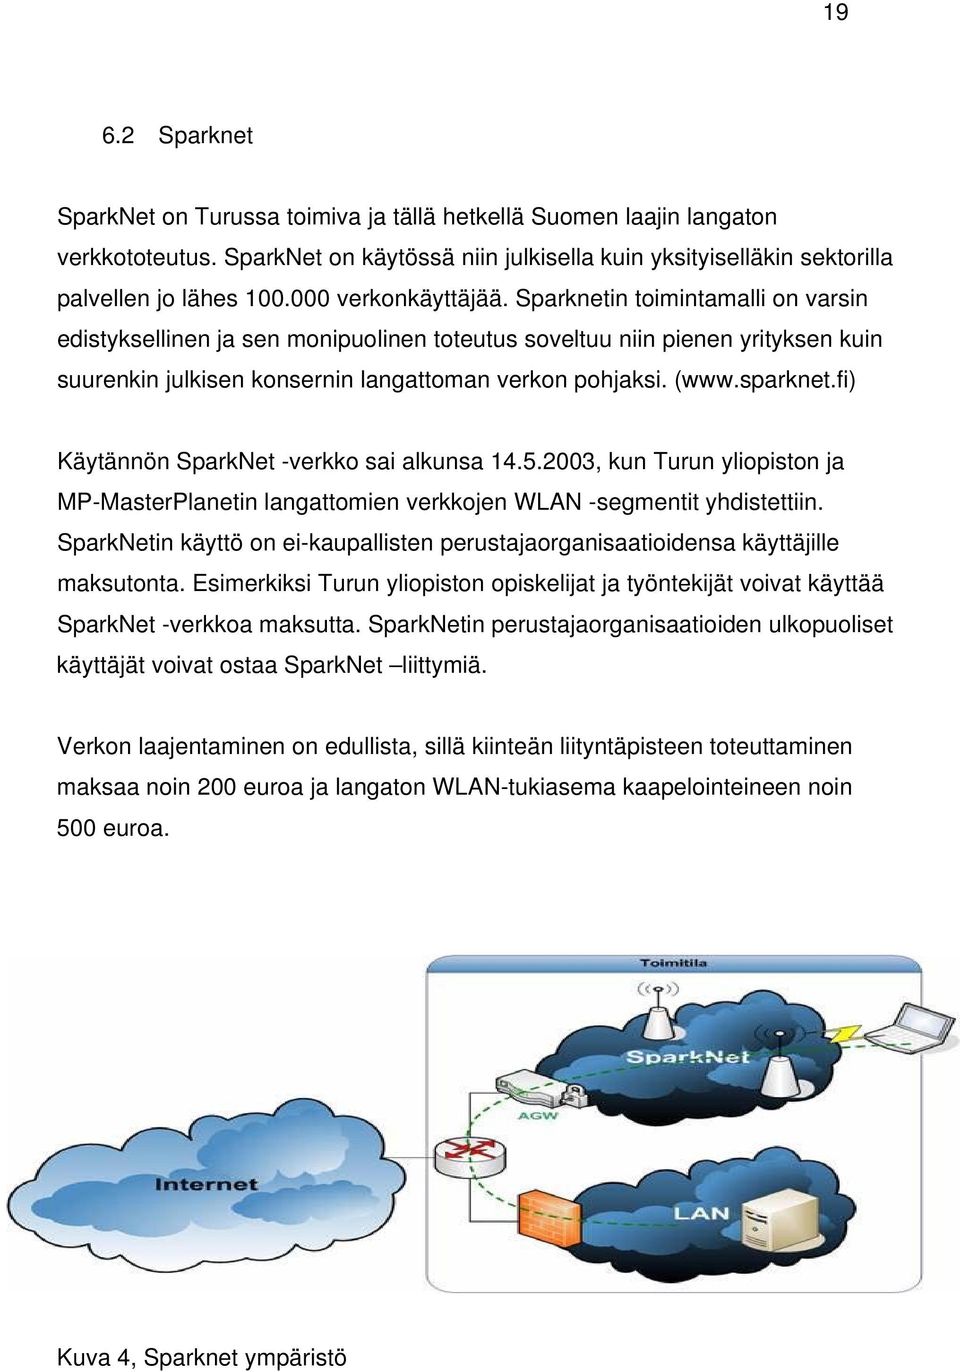 sparknet.fi) Käytännön SparkNet -verkko sai alkunsa 14.5.2003, kun Turun yliopiston ja MP-MasterPlanetin langattomien verkkojen WLAN -segmentit yhdistettiin.